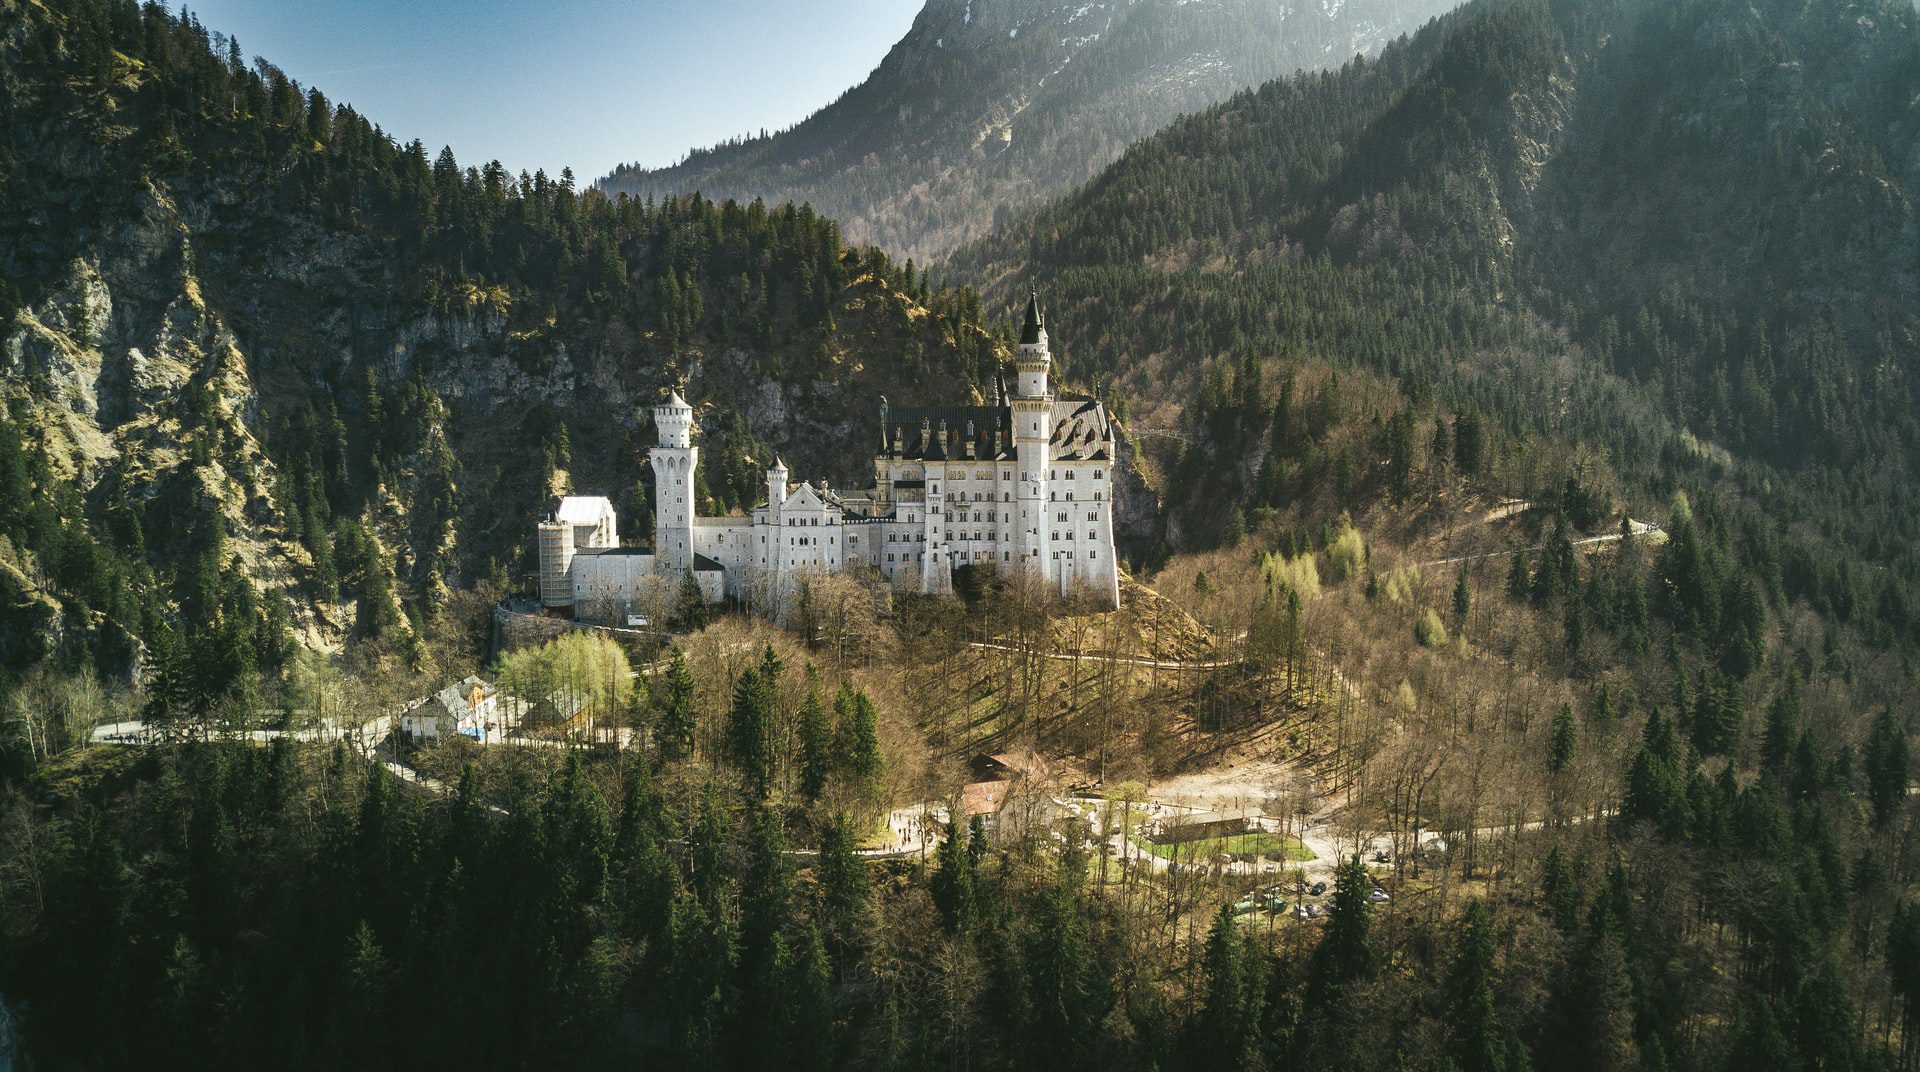 Horaires et tarifs pour visiter le château de Neuschwanstein